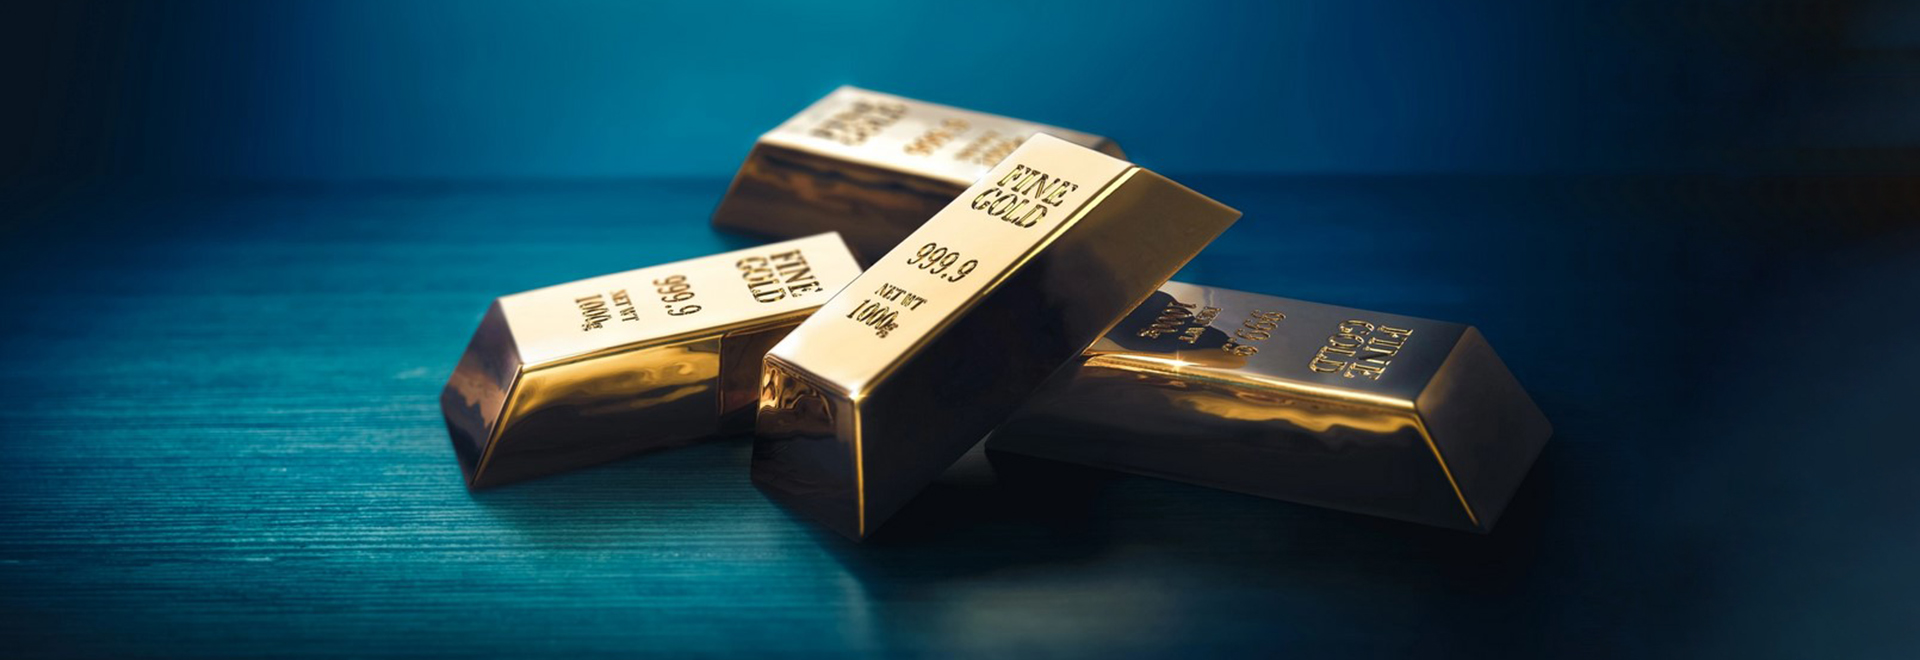 در حالی که سرمایه گذاران منتظر اطلاعات اقتصادی آمریکا هستند، قیمت طلا افزایش یافت